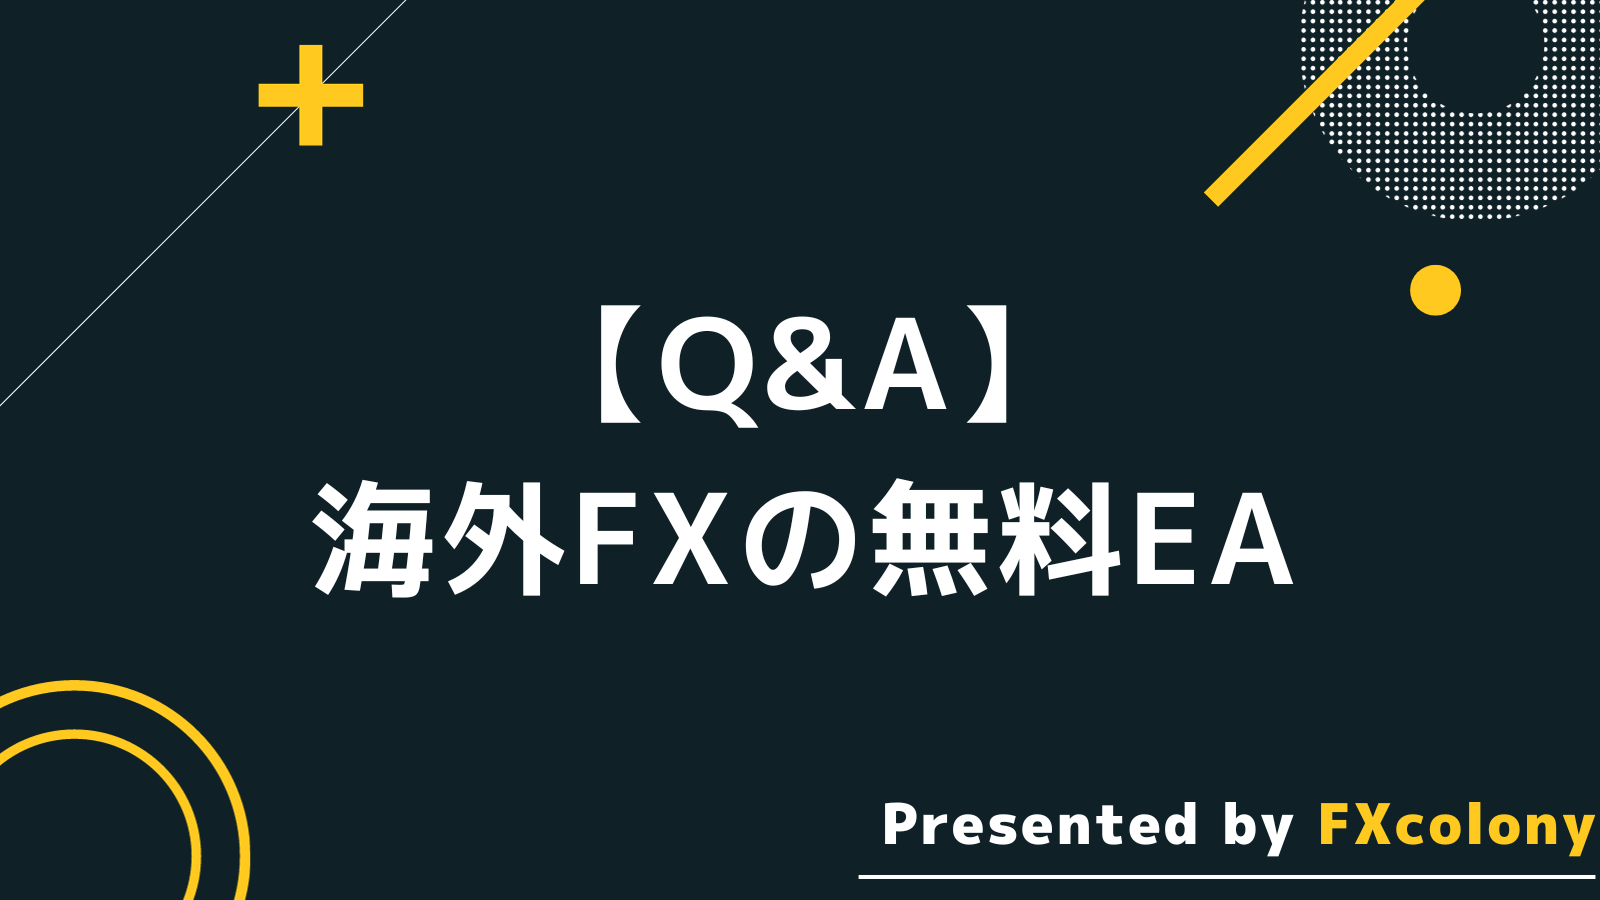 海外FX おすすめ無料EA Q&A